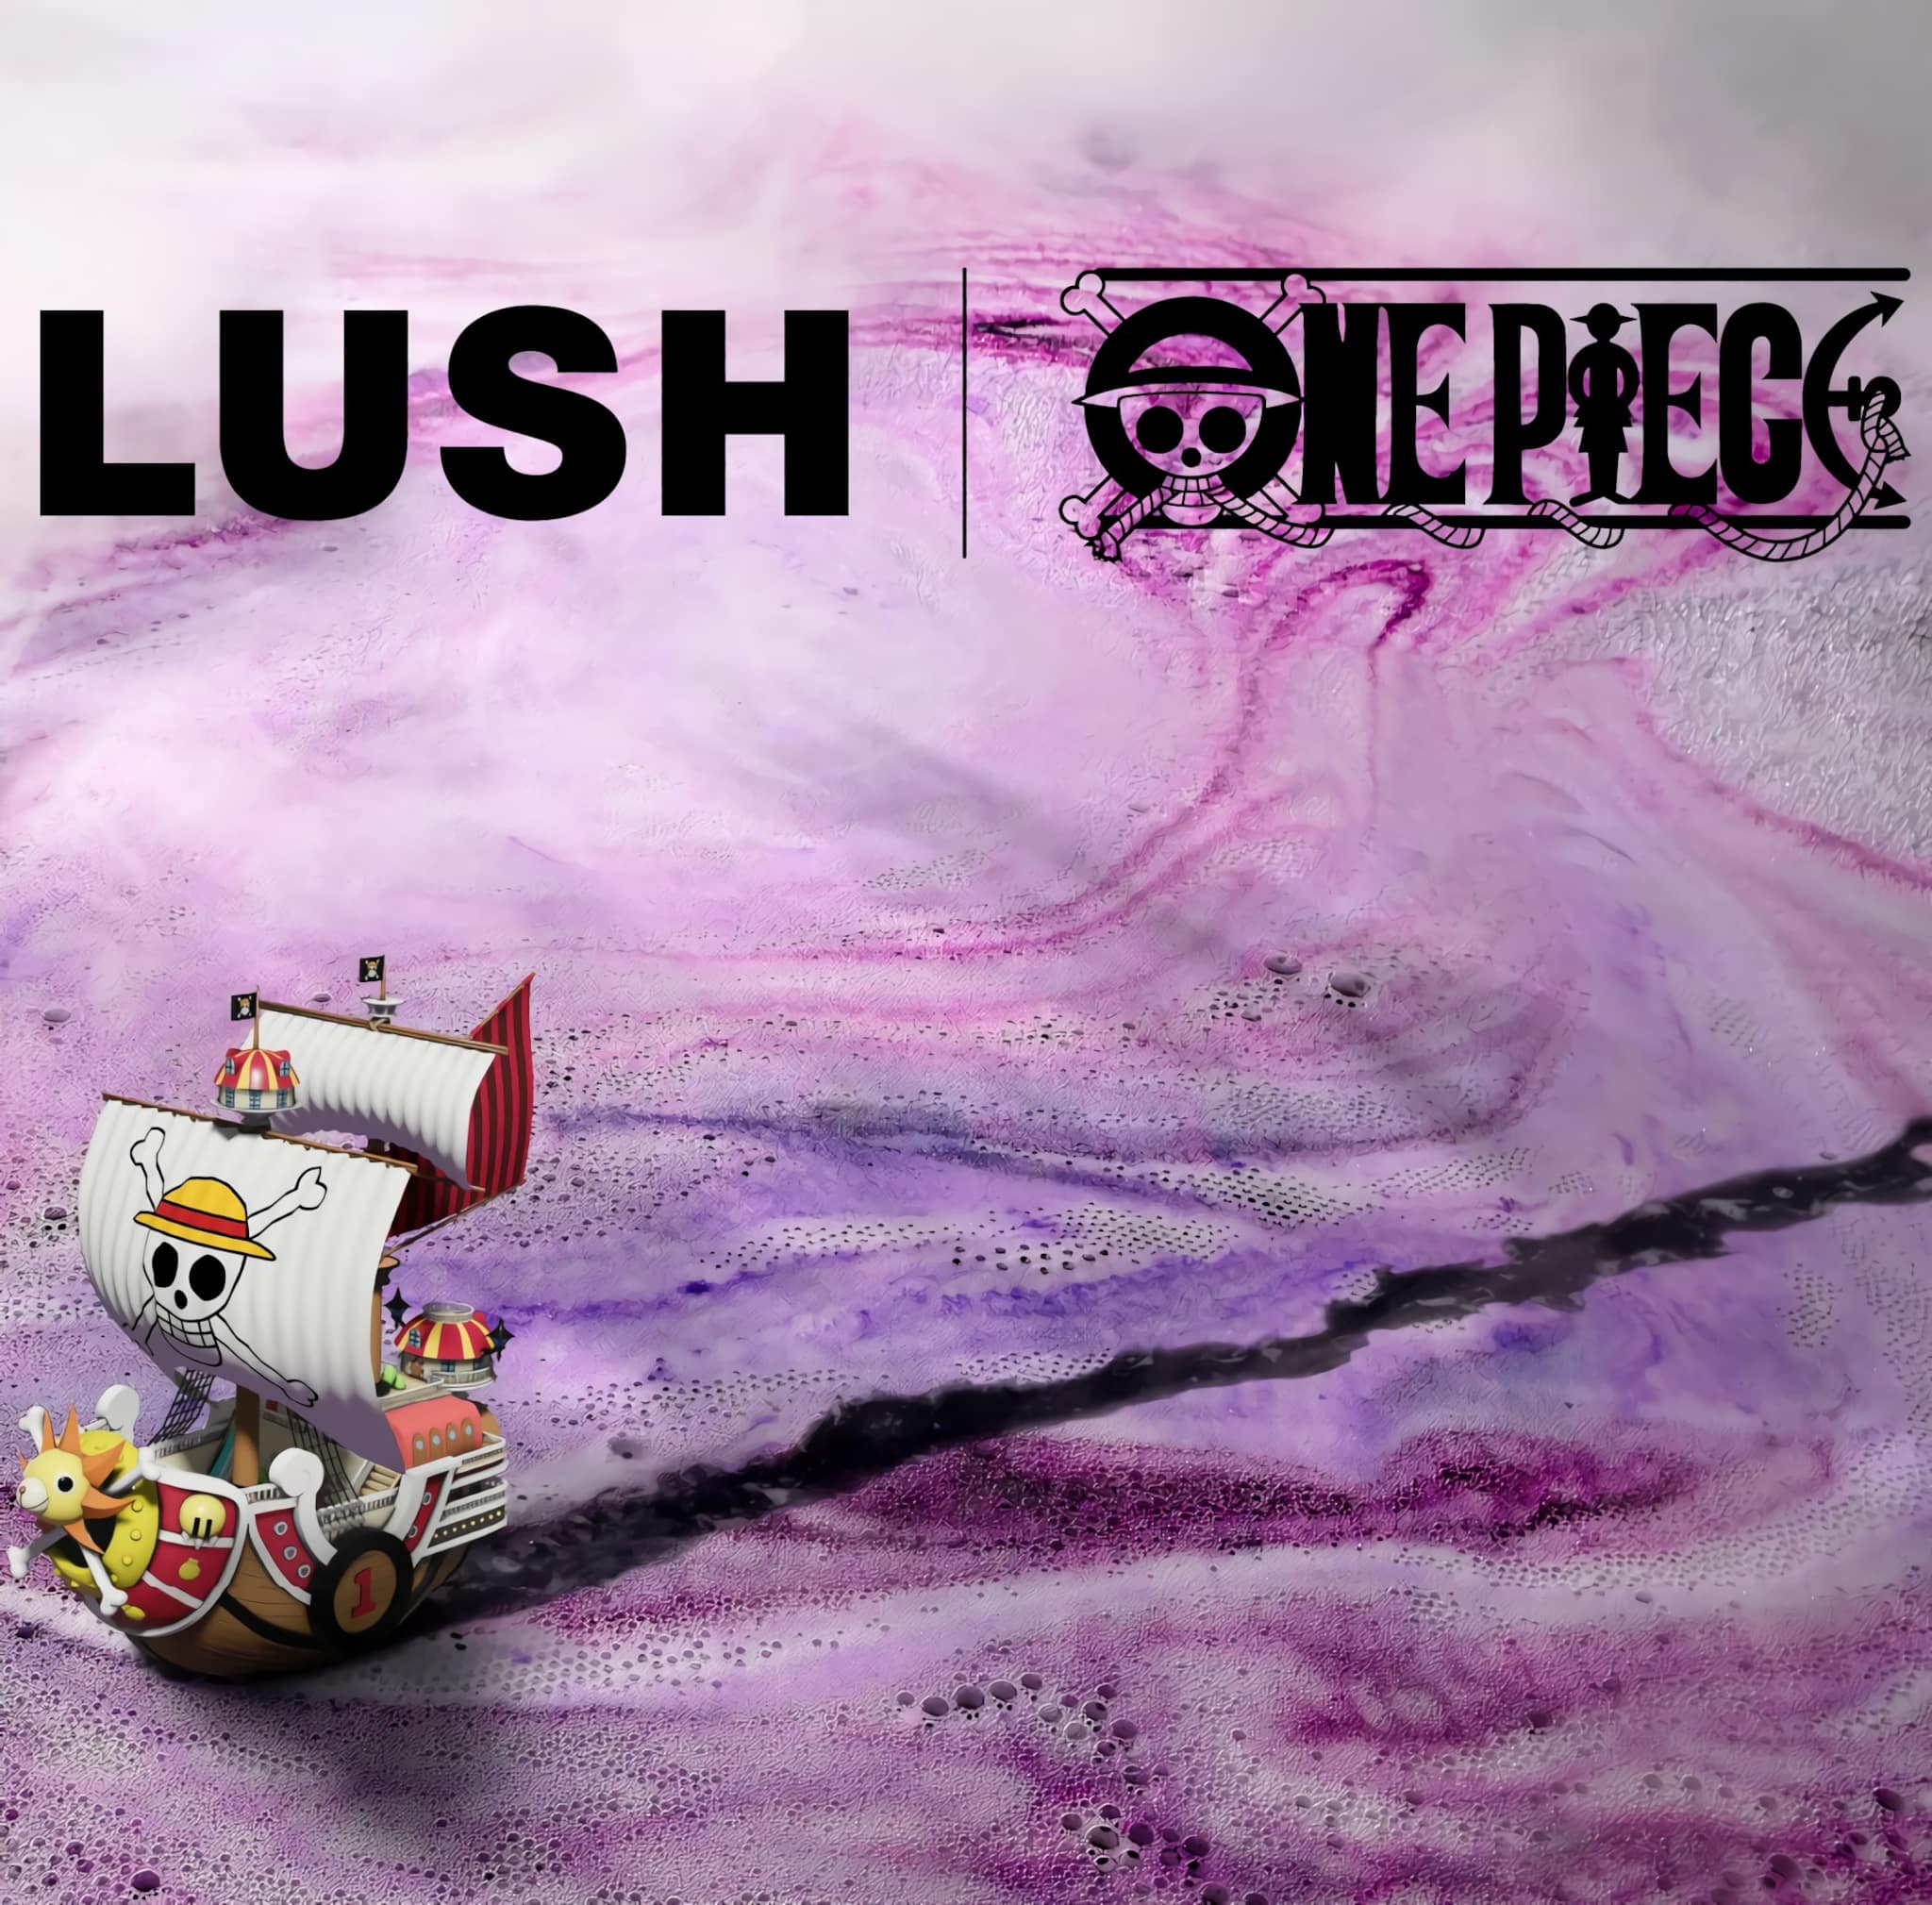 Annonce de la collaboration de la marque Lush avec le manga One Piece